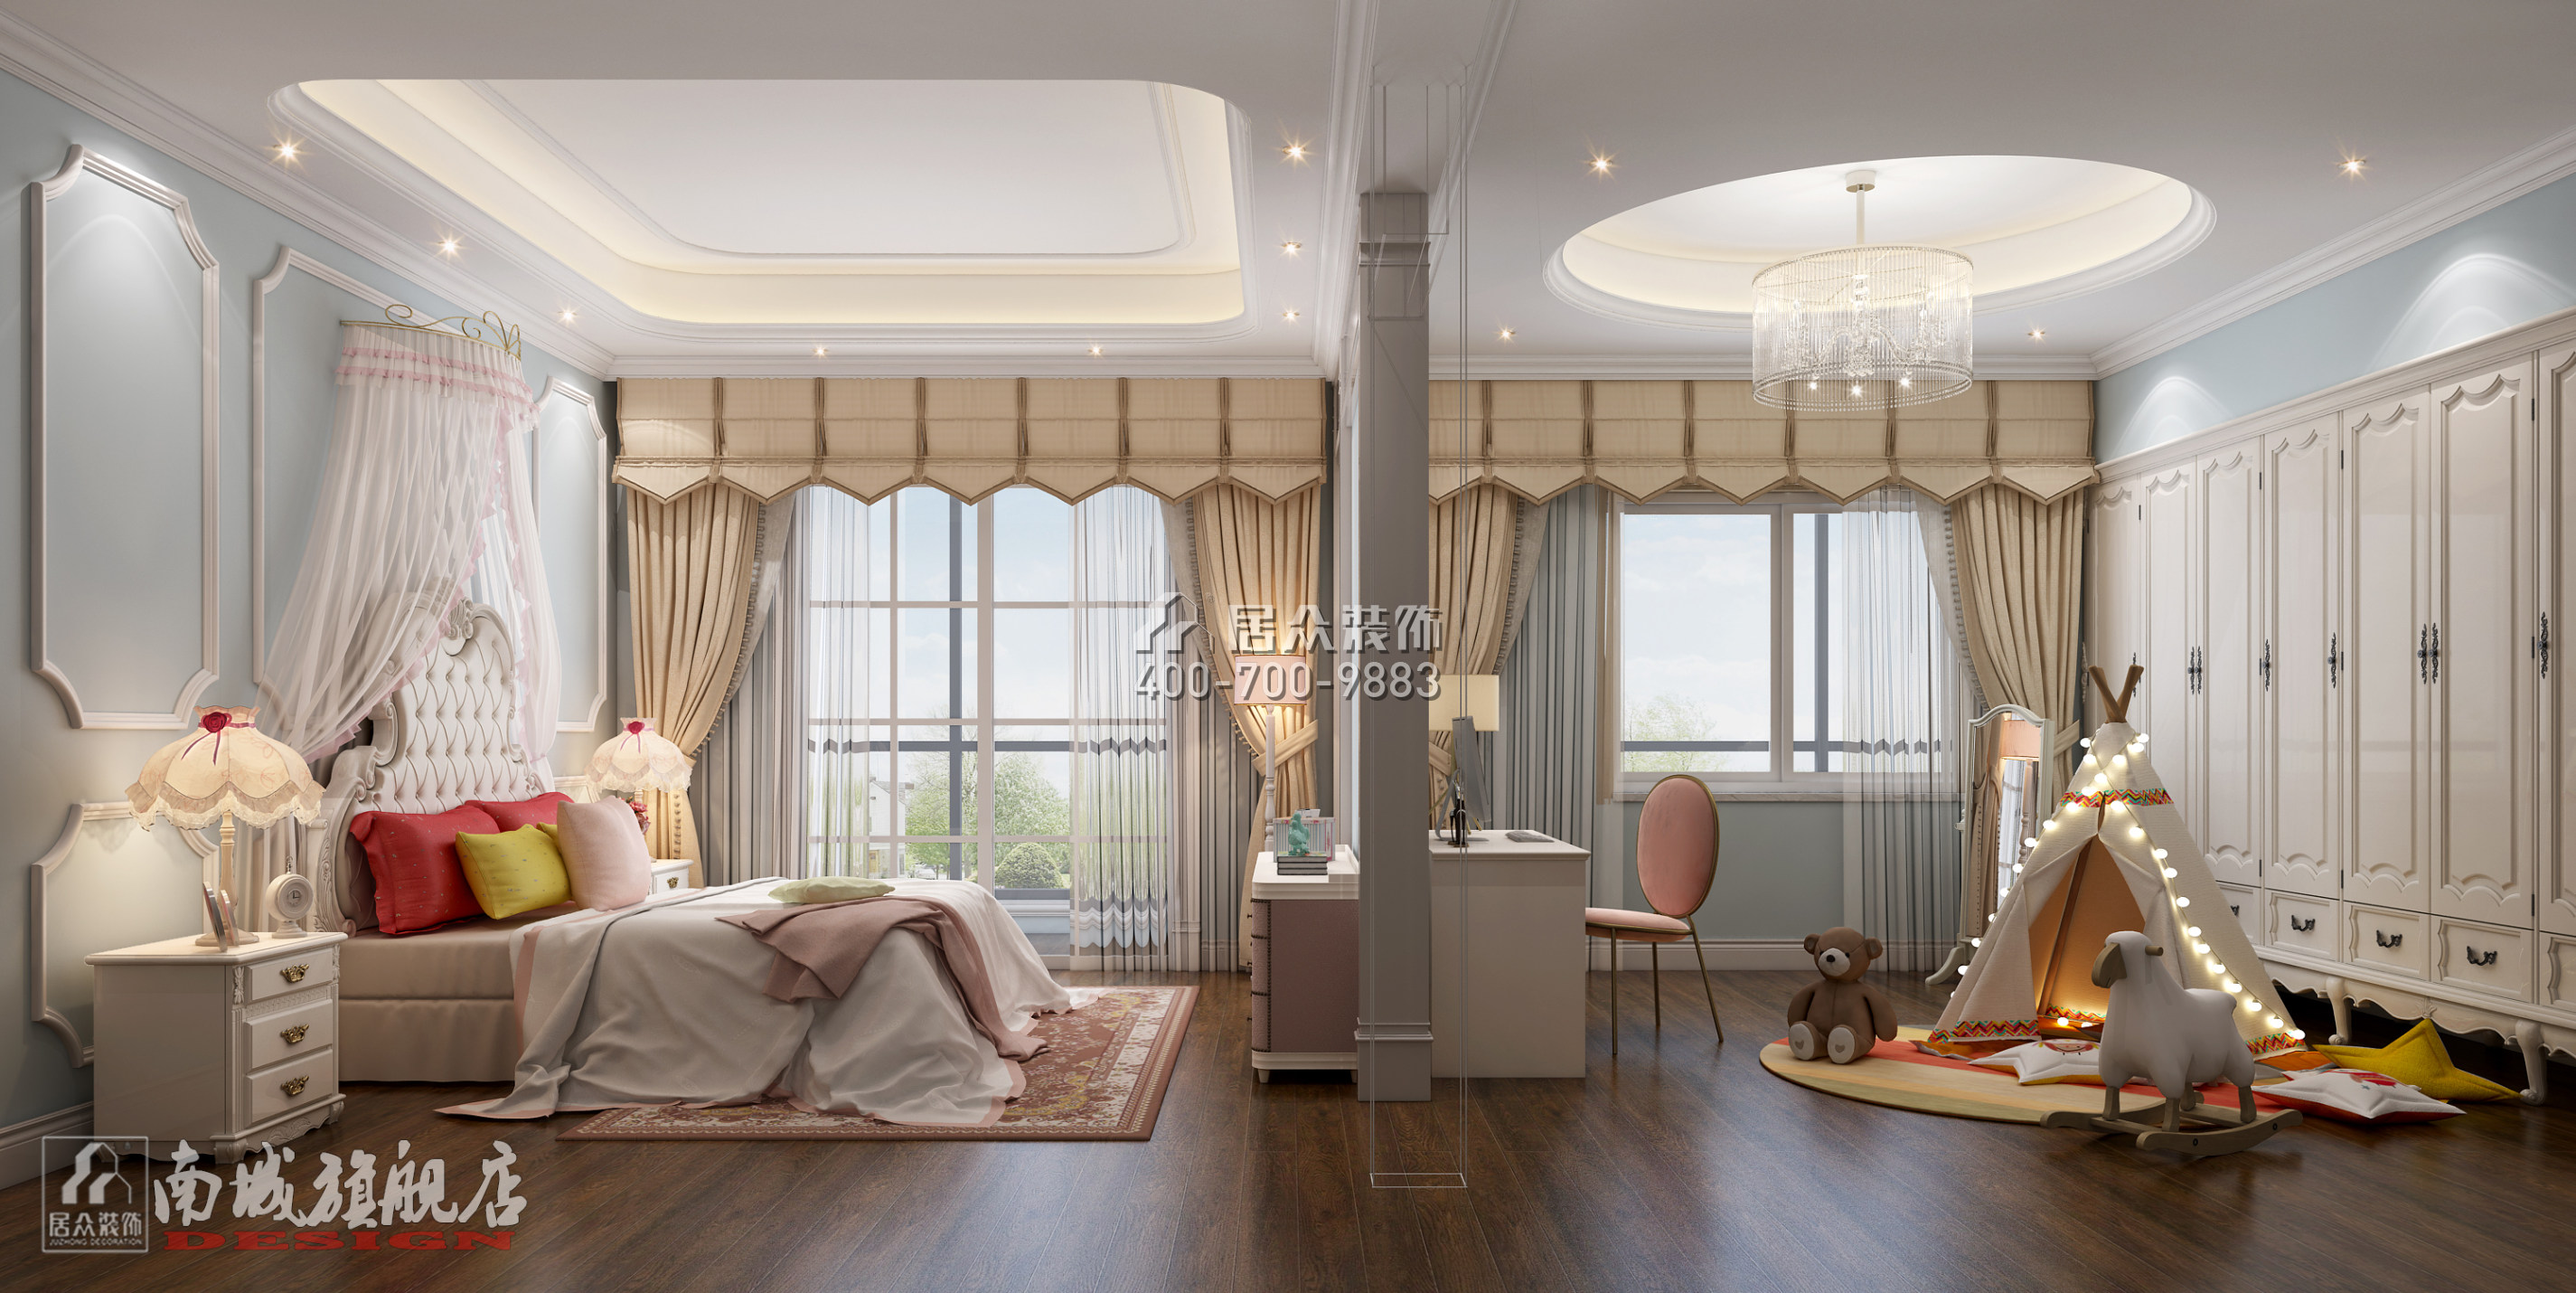 600平方米中式风格别墅户型卧室装修效果图